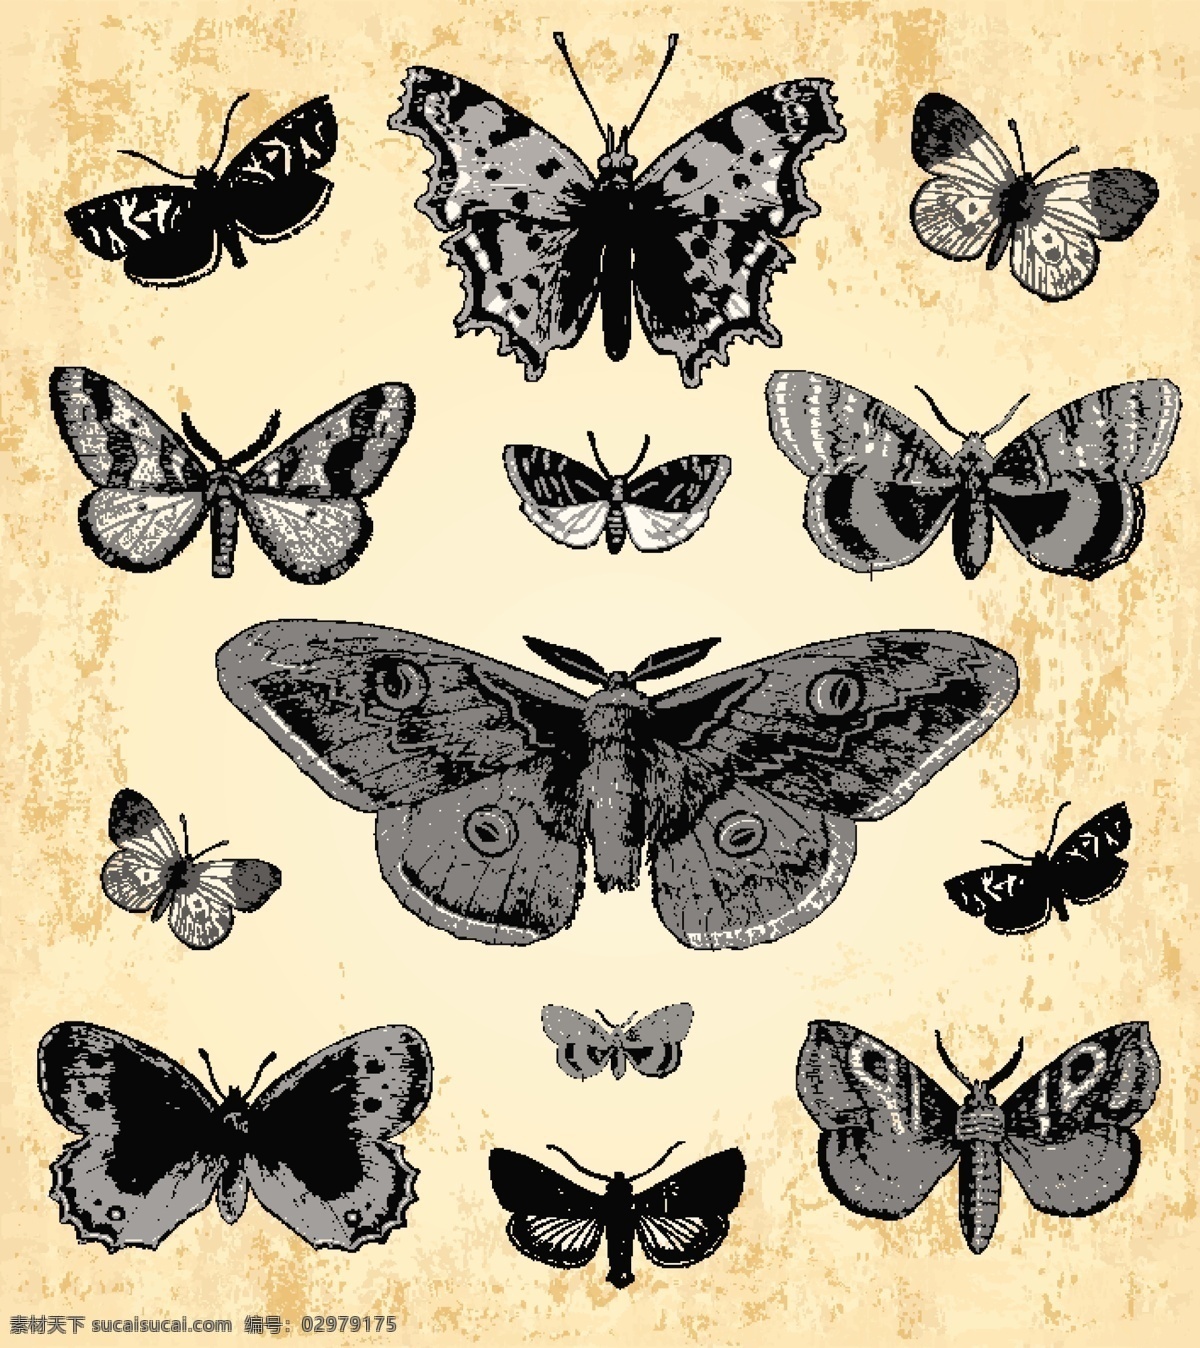 复古 蝴蝶 矢量 飞舞 昆虫 动物 黑白 标本 斑驳 做旧 插画 背景 海报 画册 矢量动物 生物世界